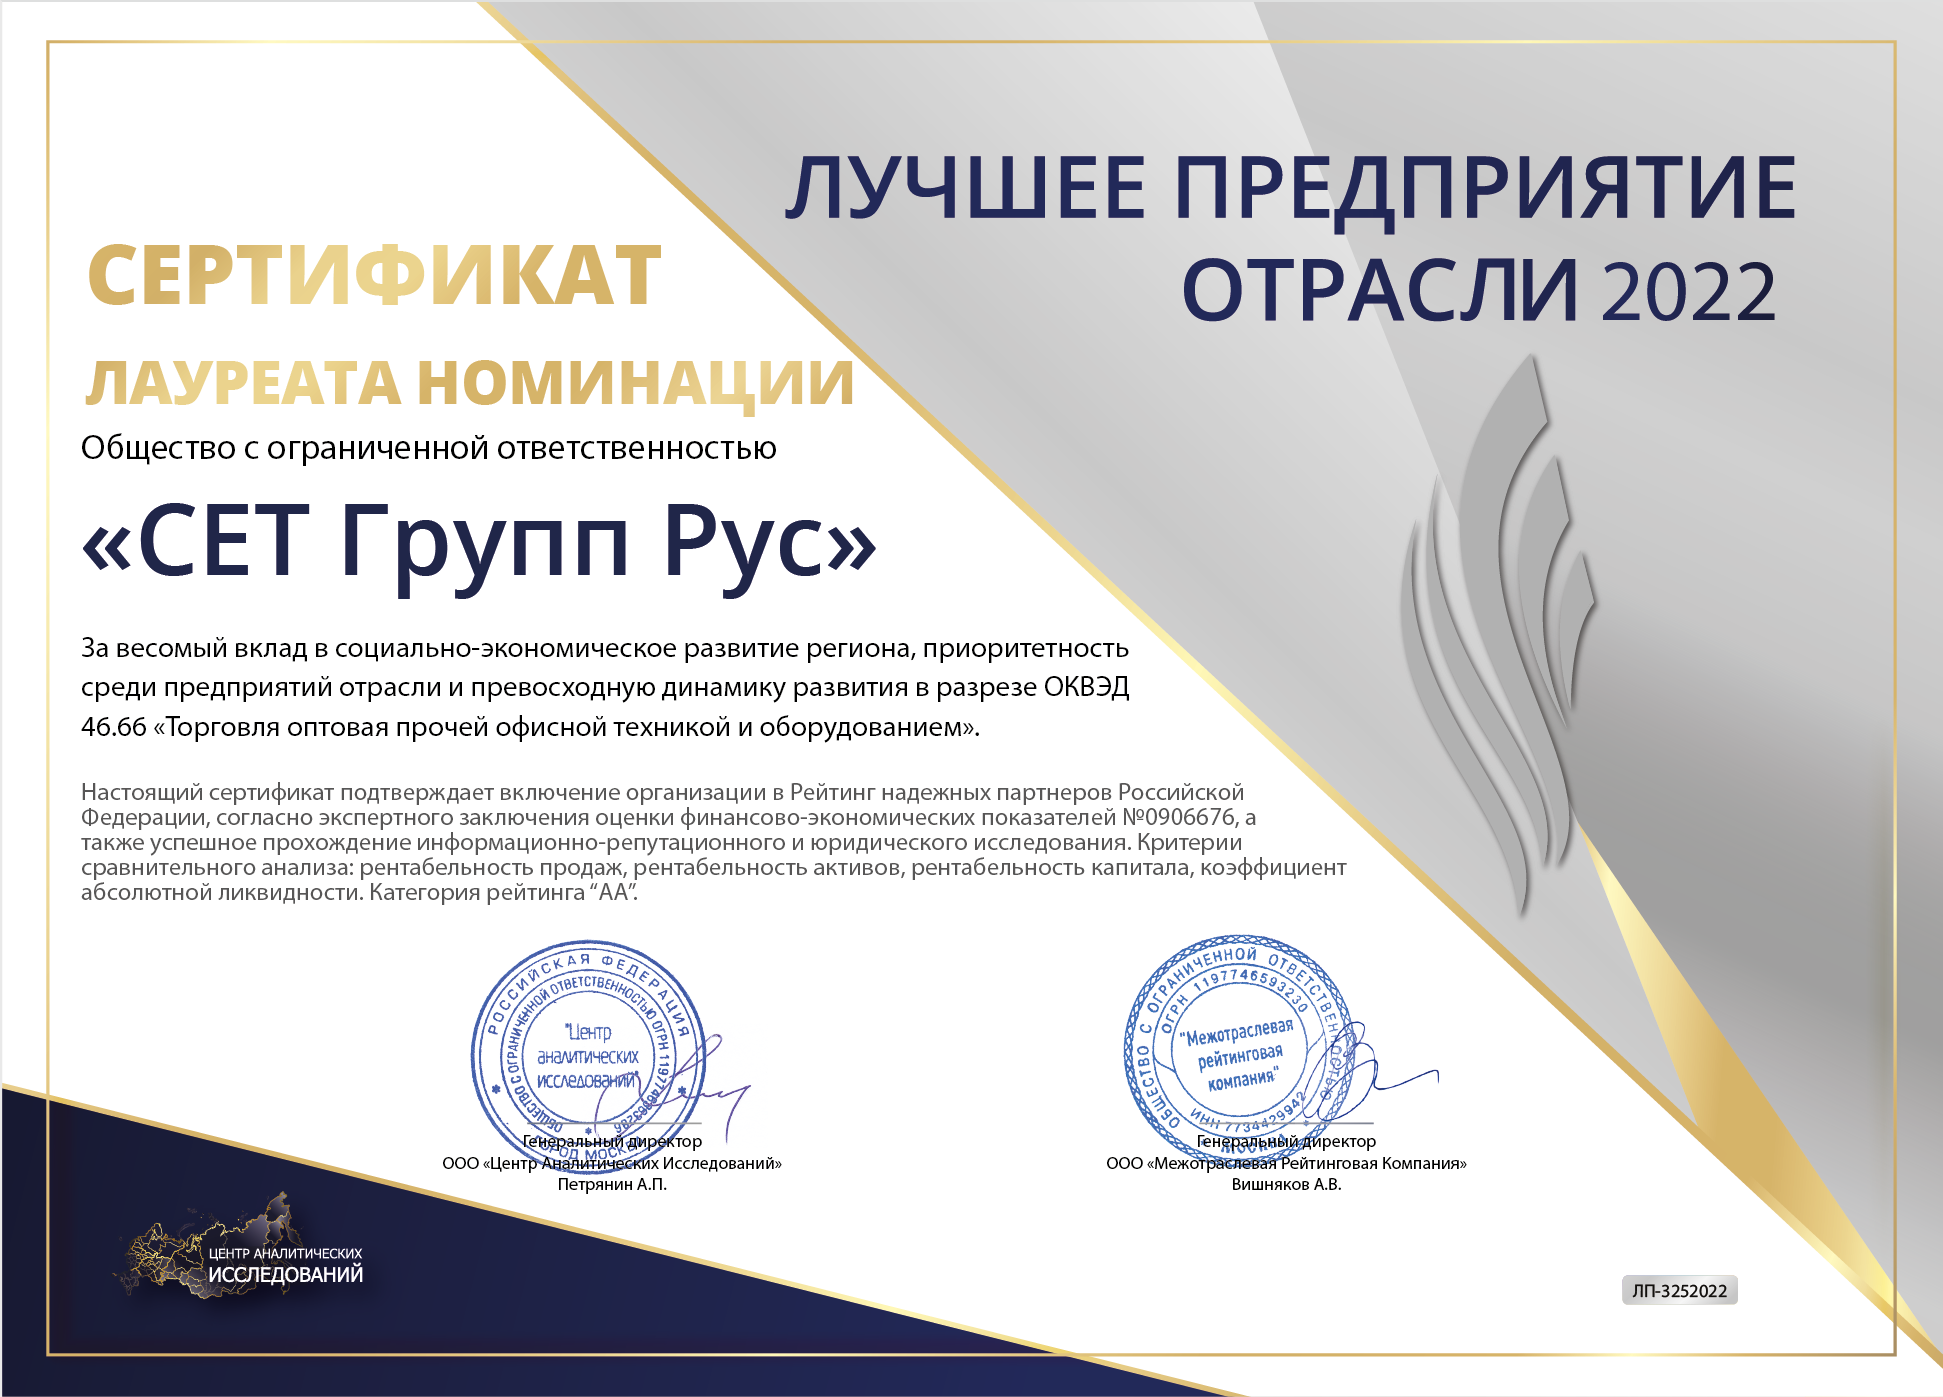 Сертификат лауреата номенации